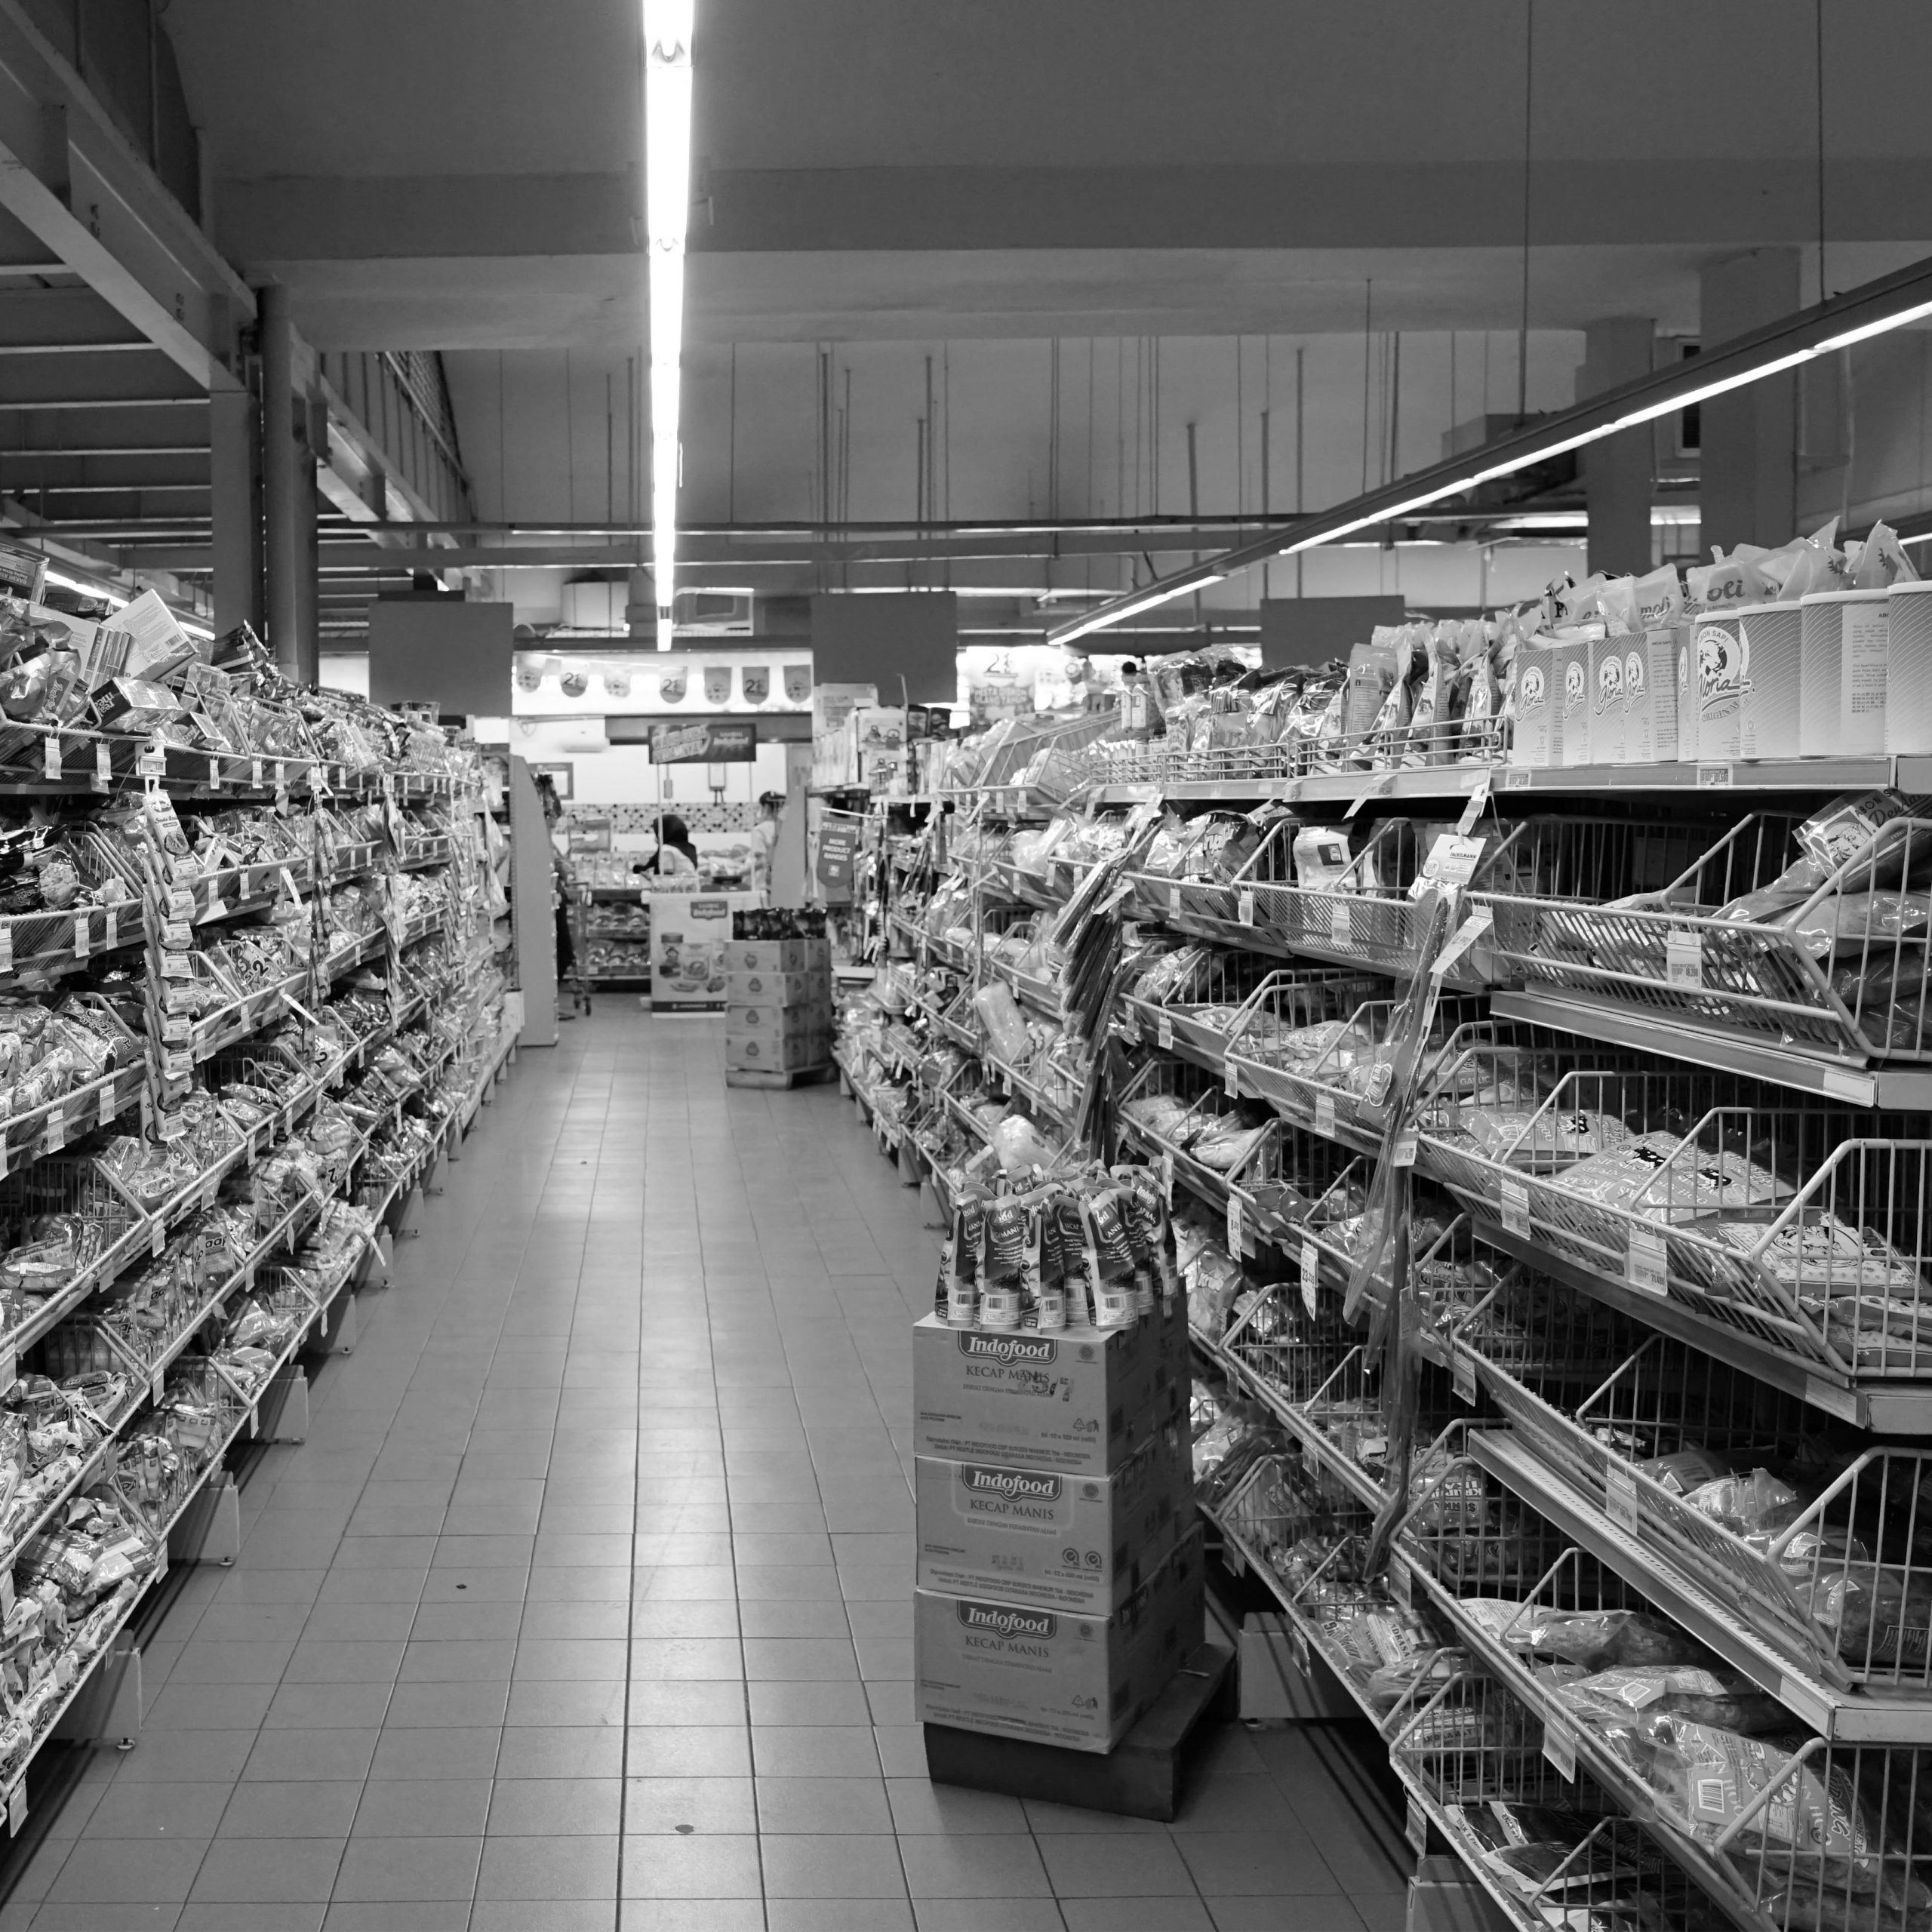 Regale in einem Geschäft für Lebensmittel (Supermarkt) mit gefließtem Bodem